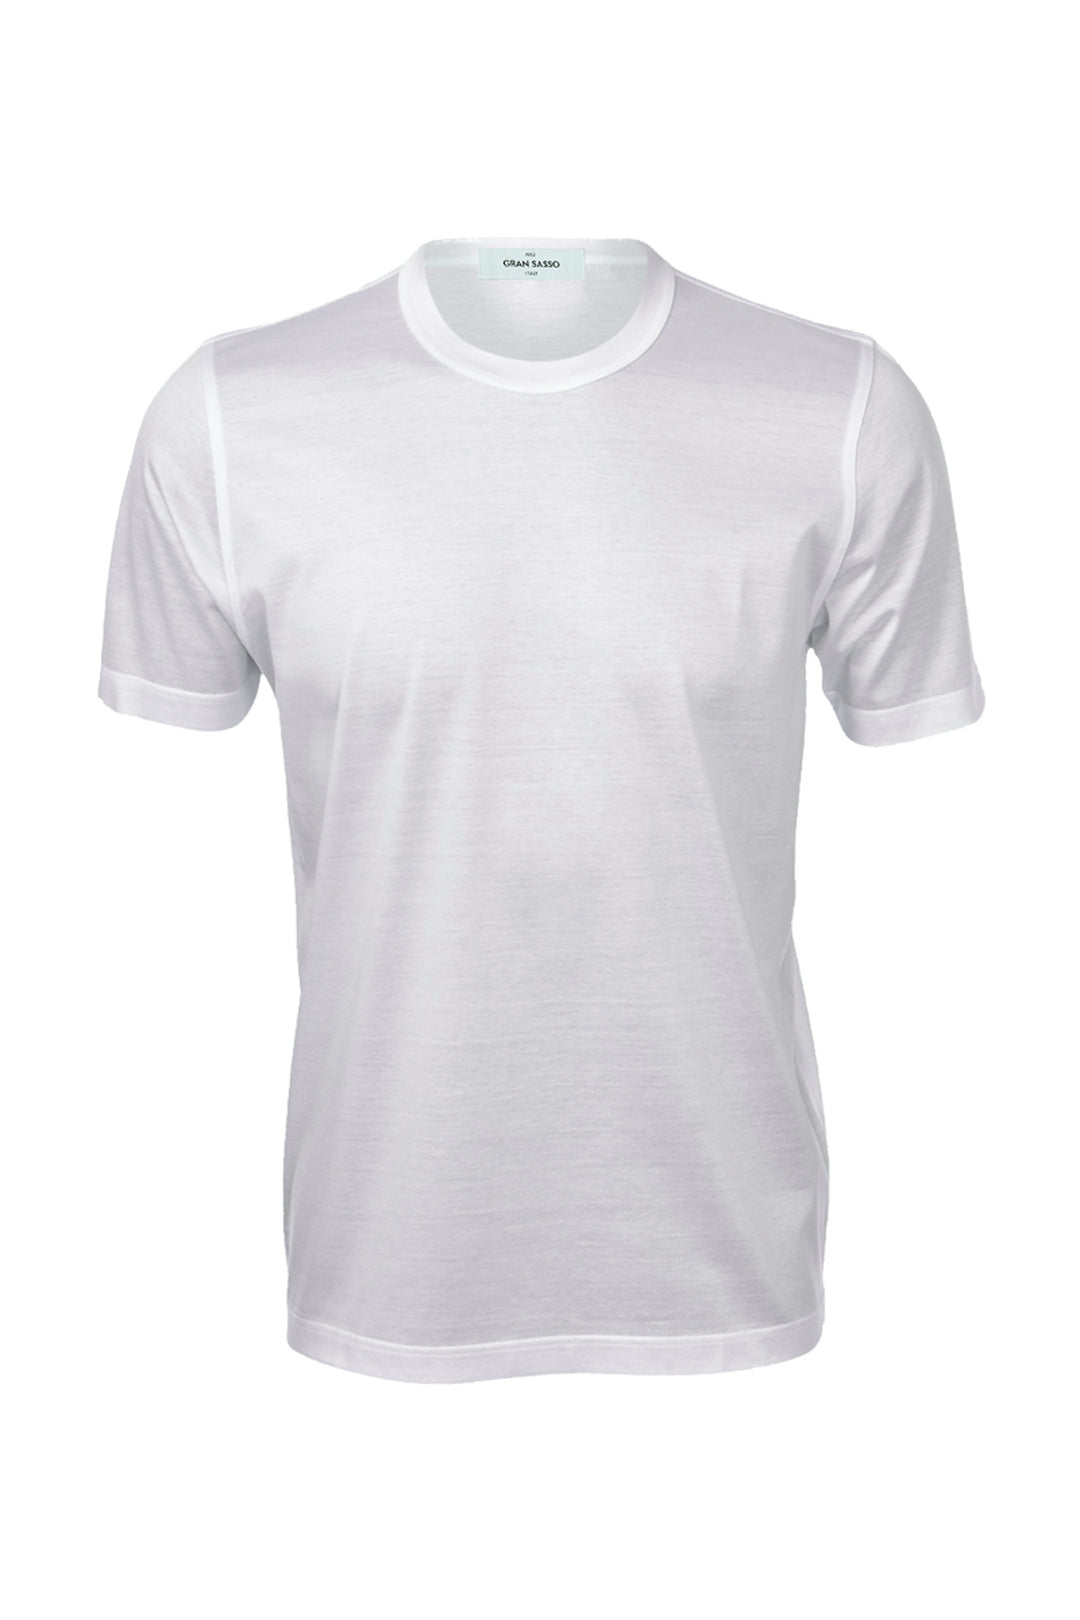 GRAN SASSO T-shirt bianca in cotone filo di scozia - Mancinelli 1954